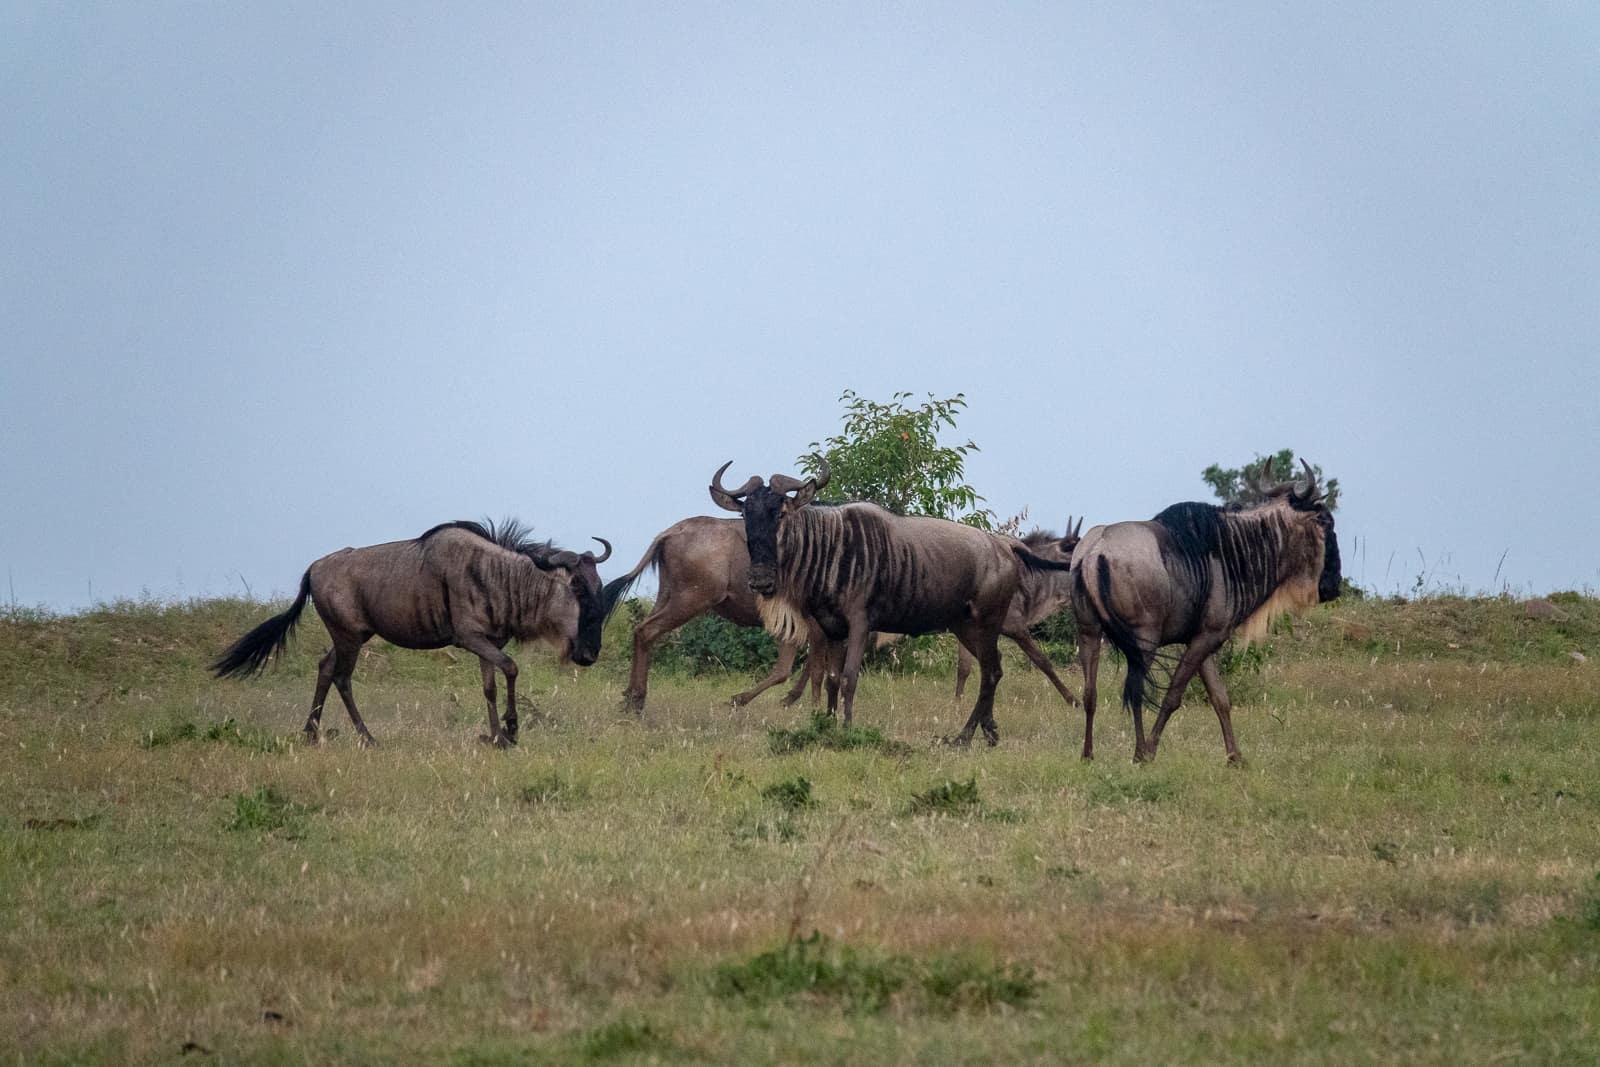 Wildebeest (Gnu) during the Maasai Mara Wildebeest Migration